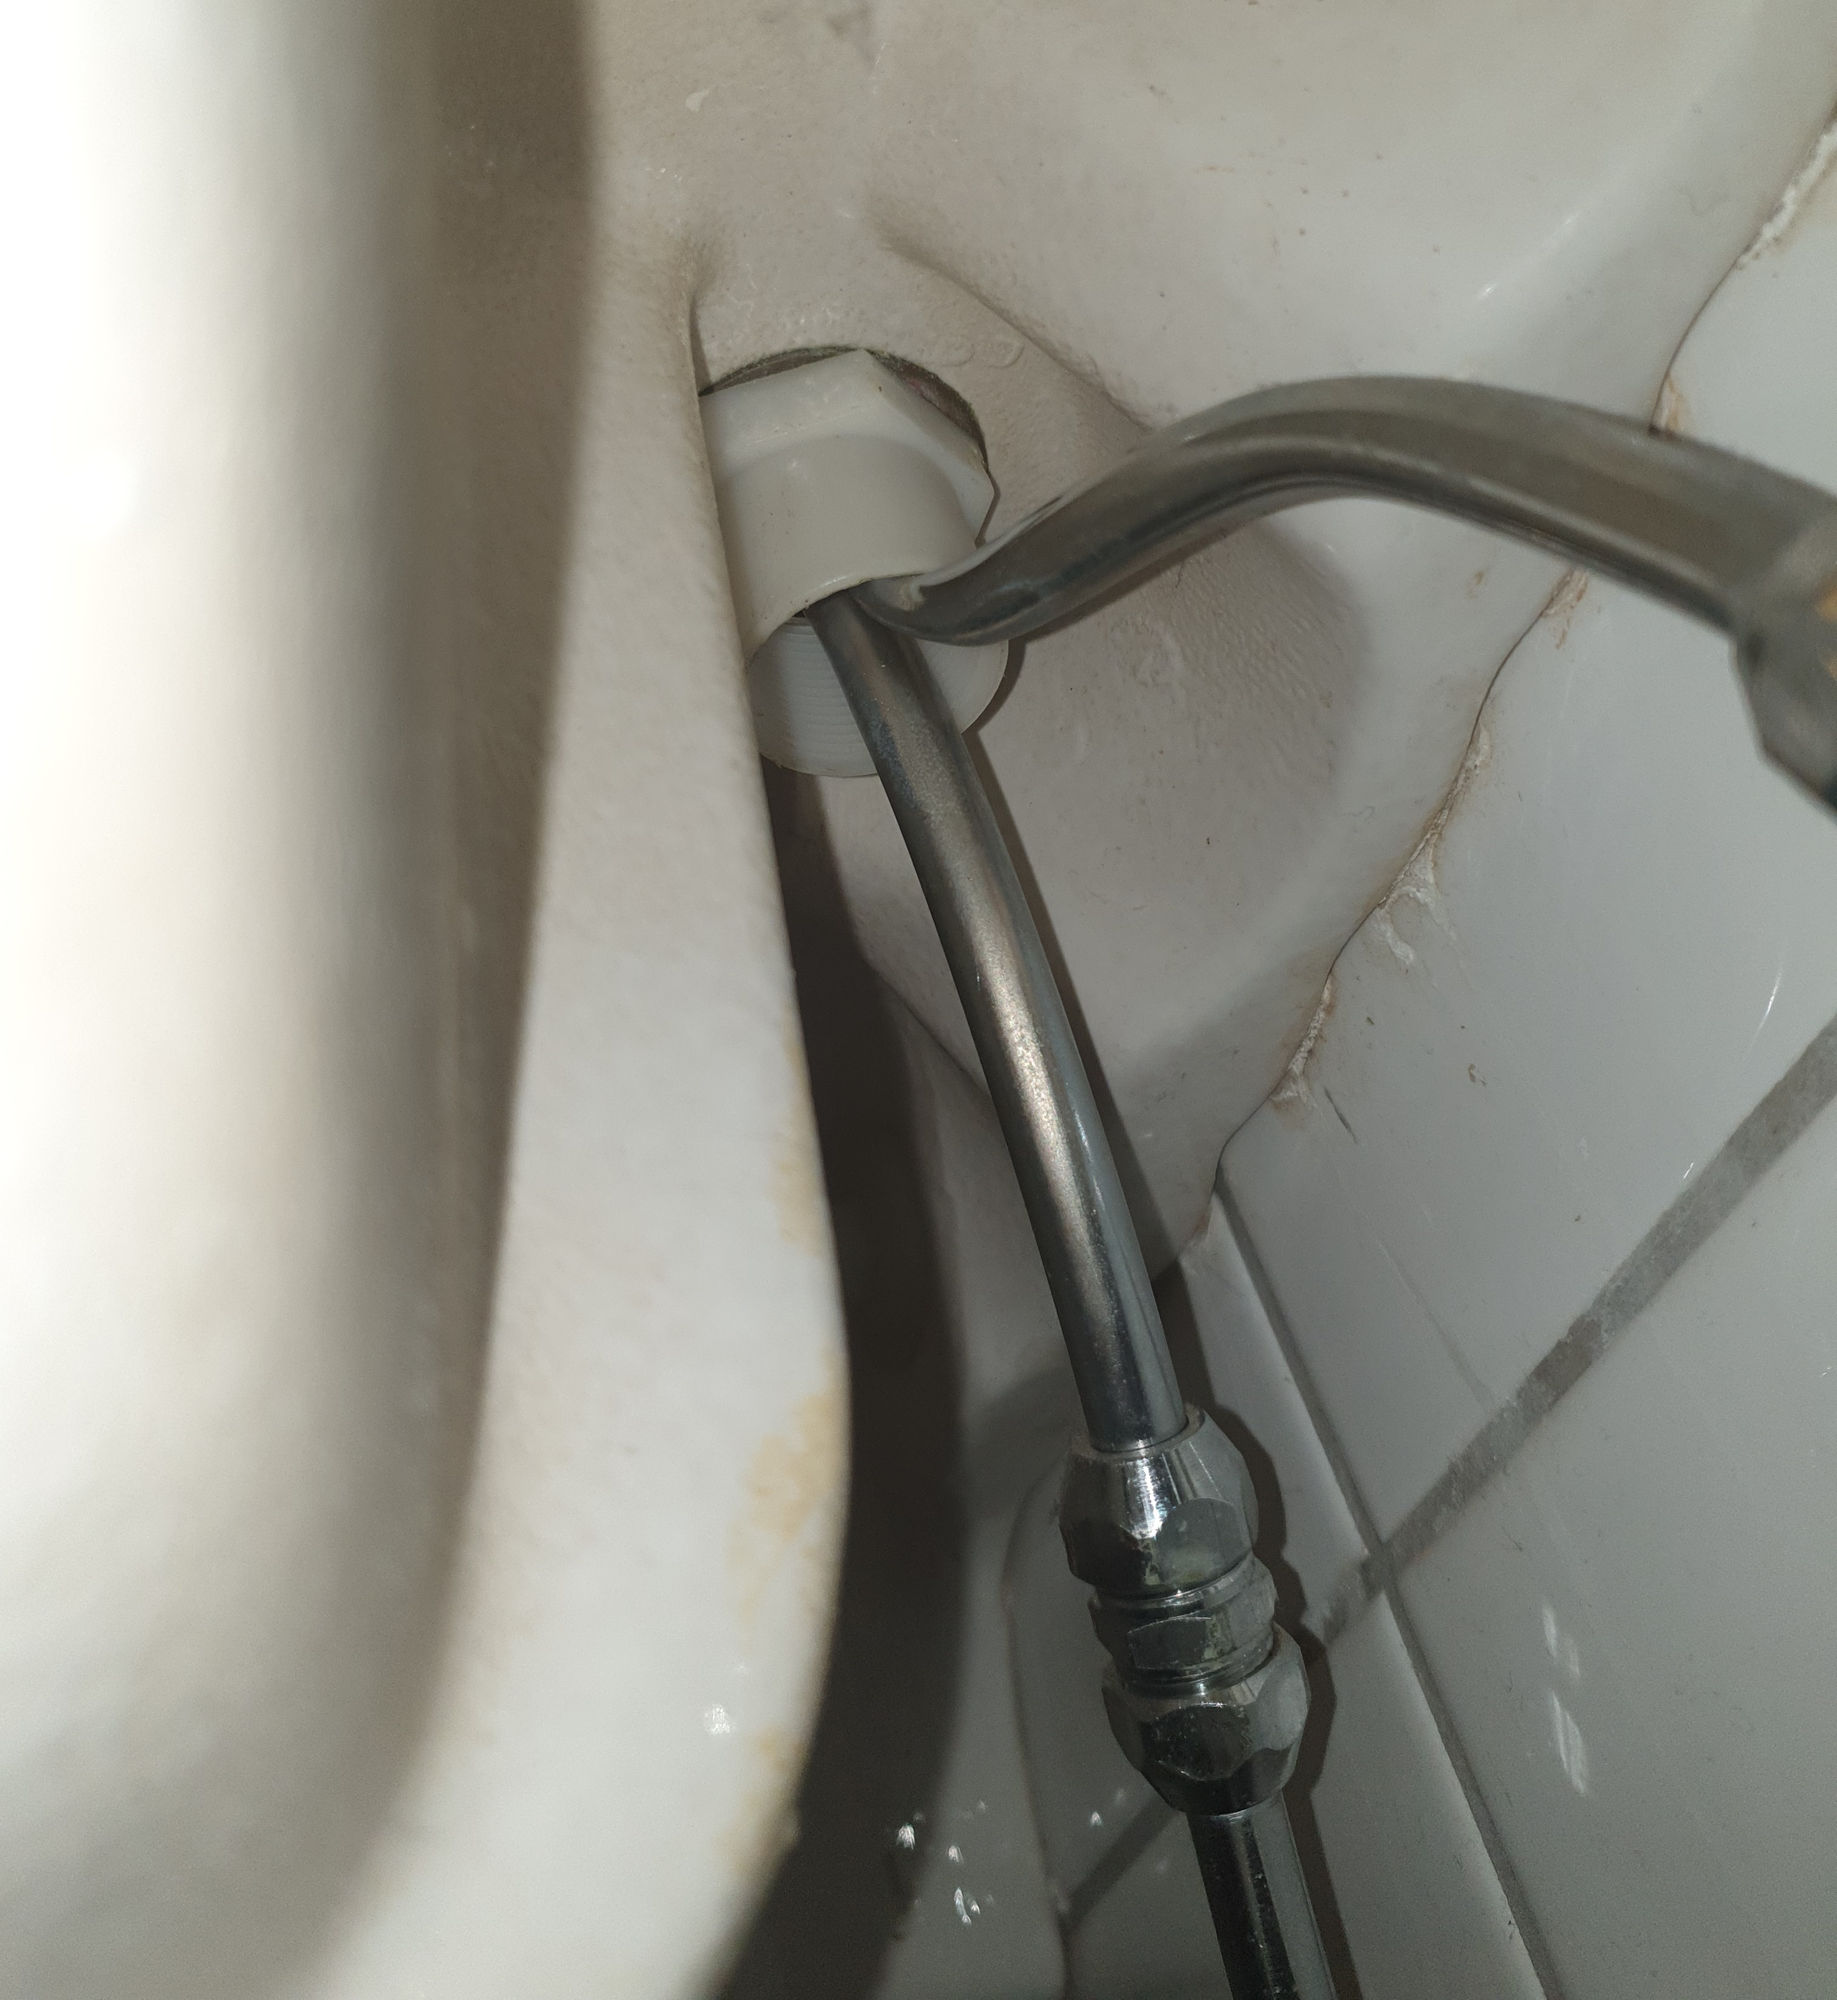 verktøy for å åpne skrue under vask - 2023.png - bgh4618